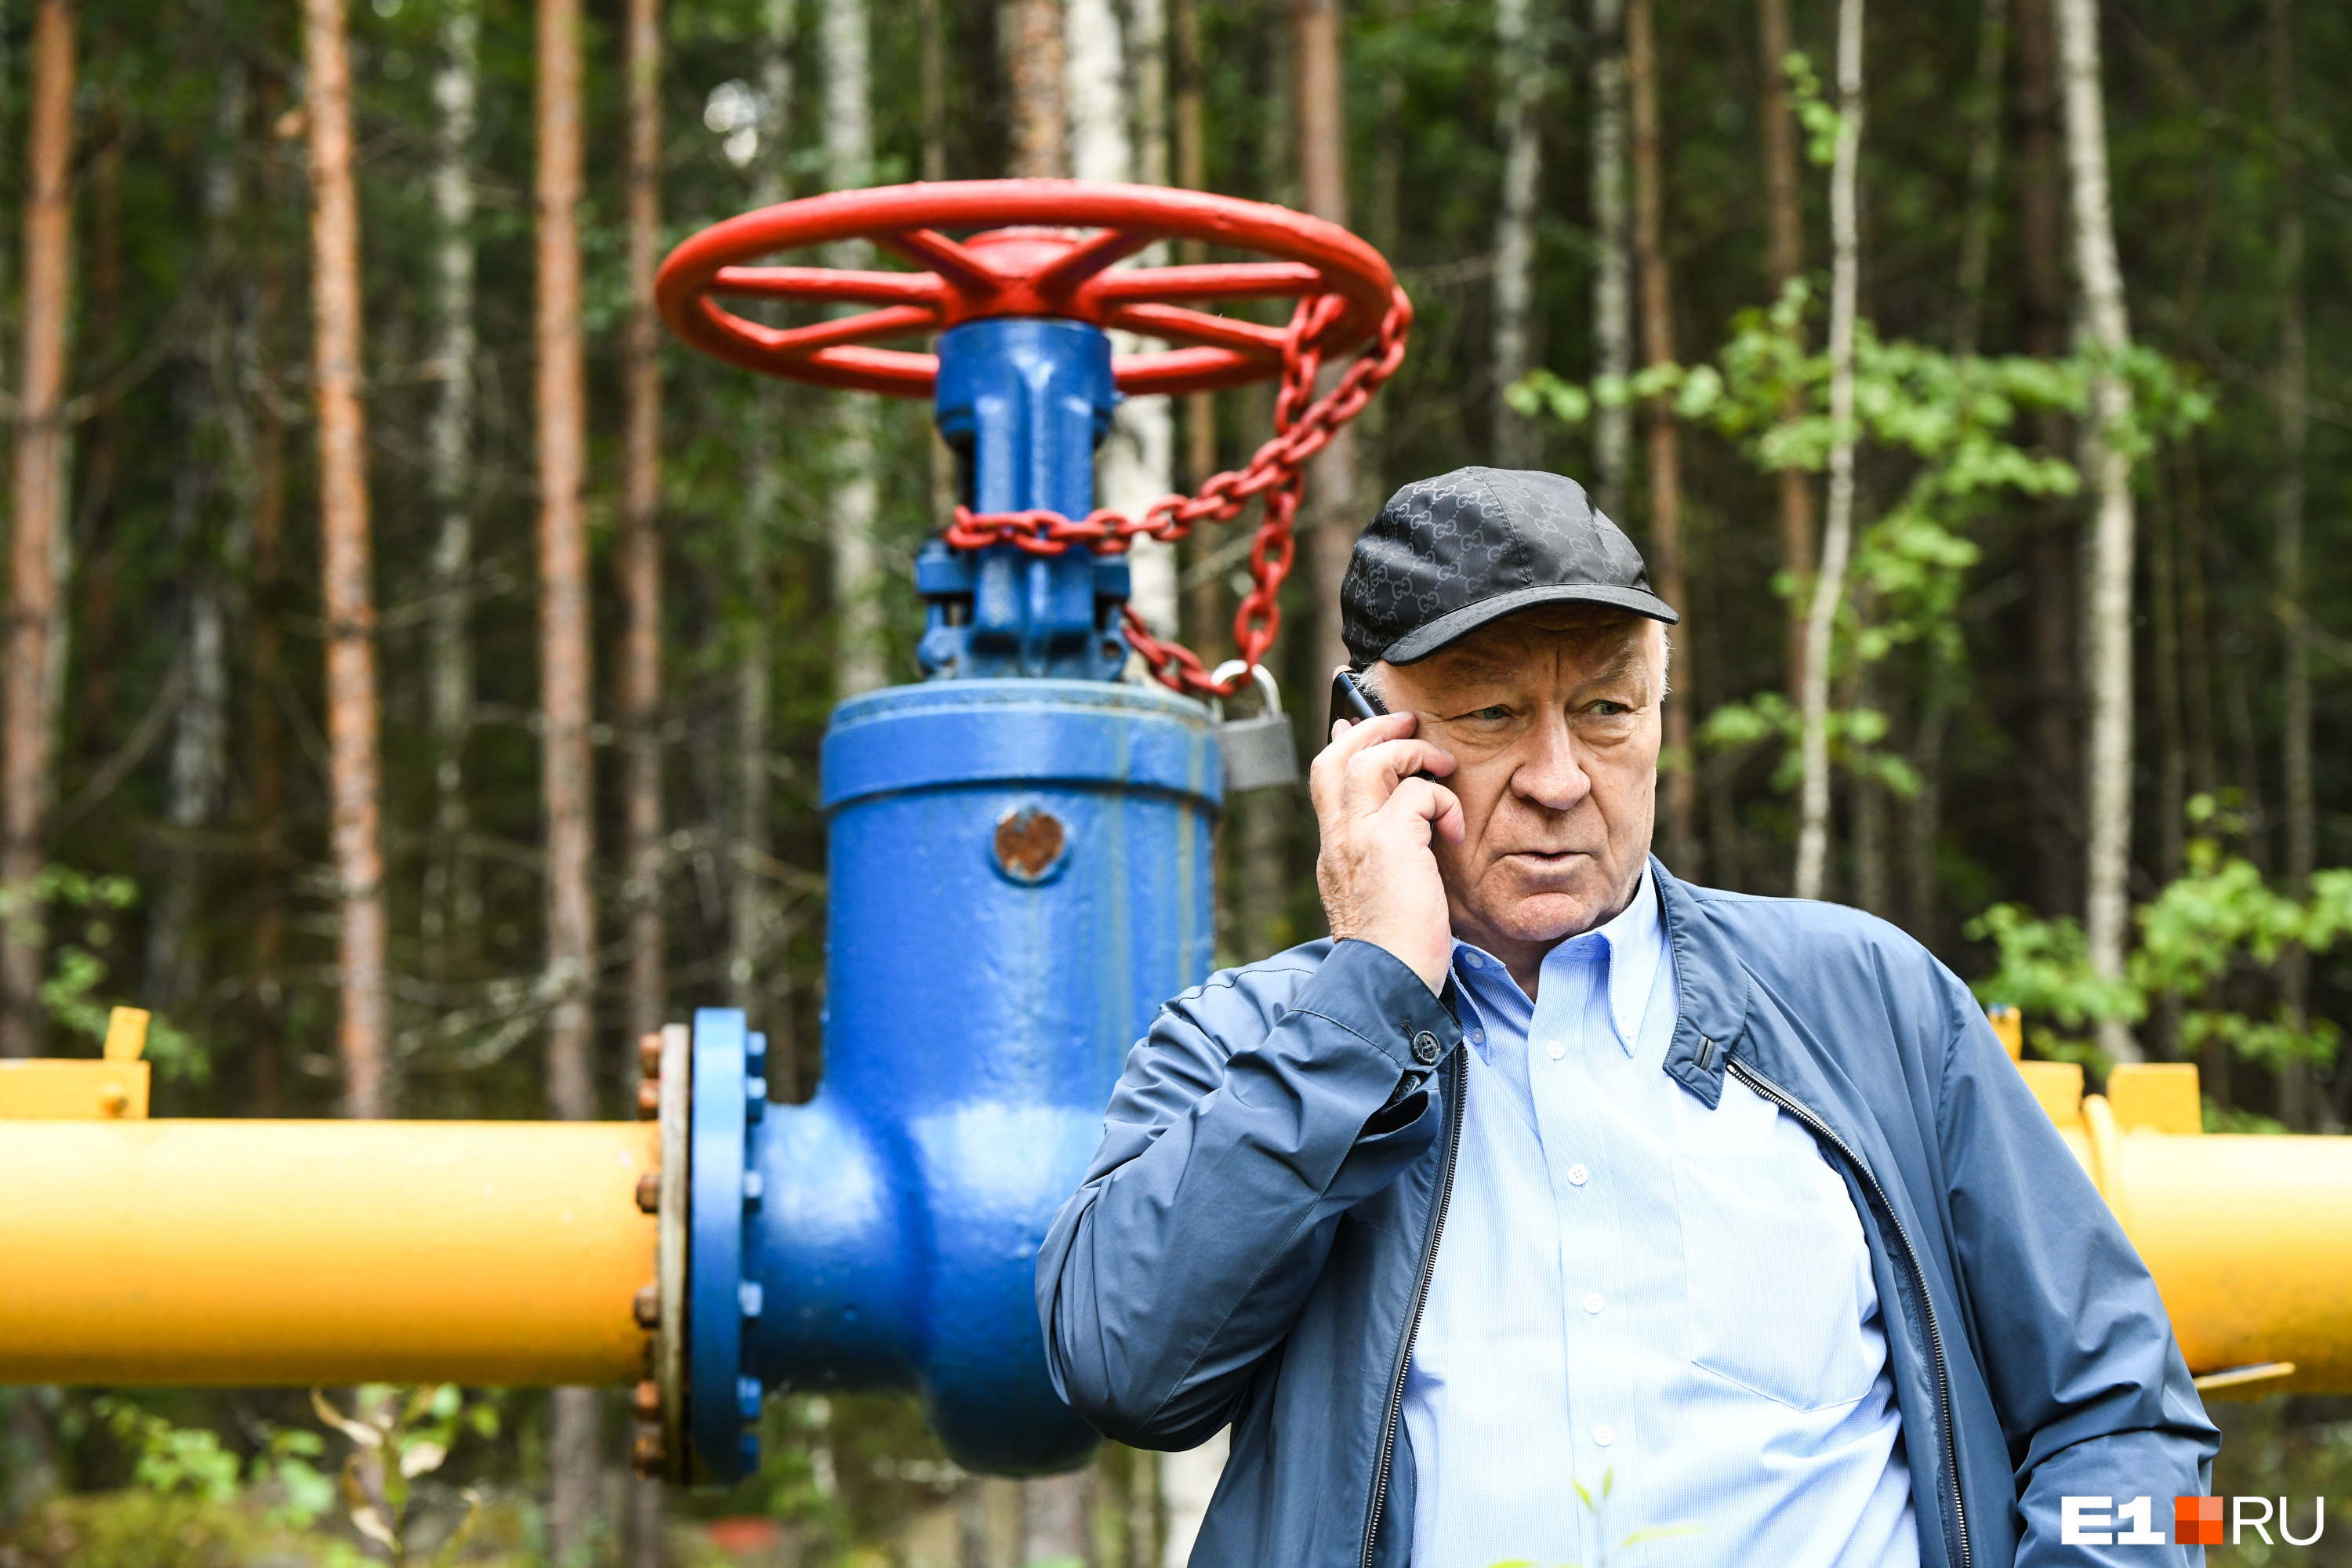 Валерий Белоус, владелец местного участка газопровода, кому-то по телефону объяснял, зачем перекрыл газ в поселке